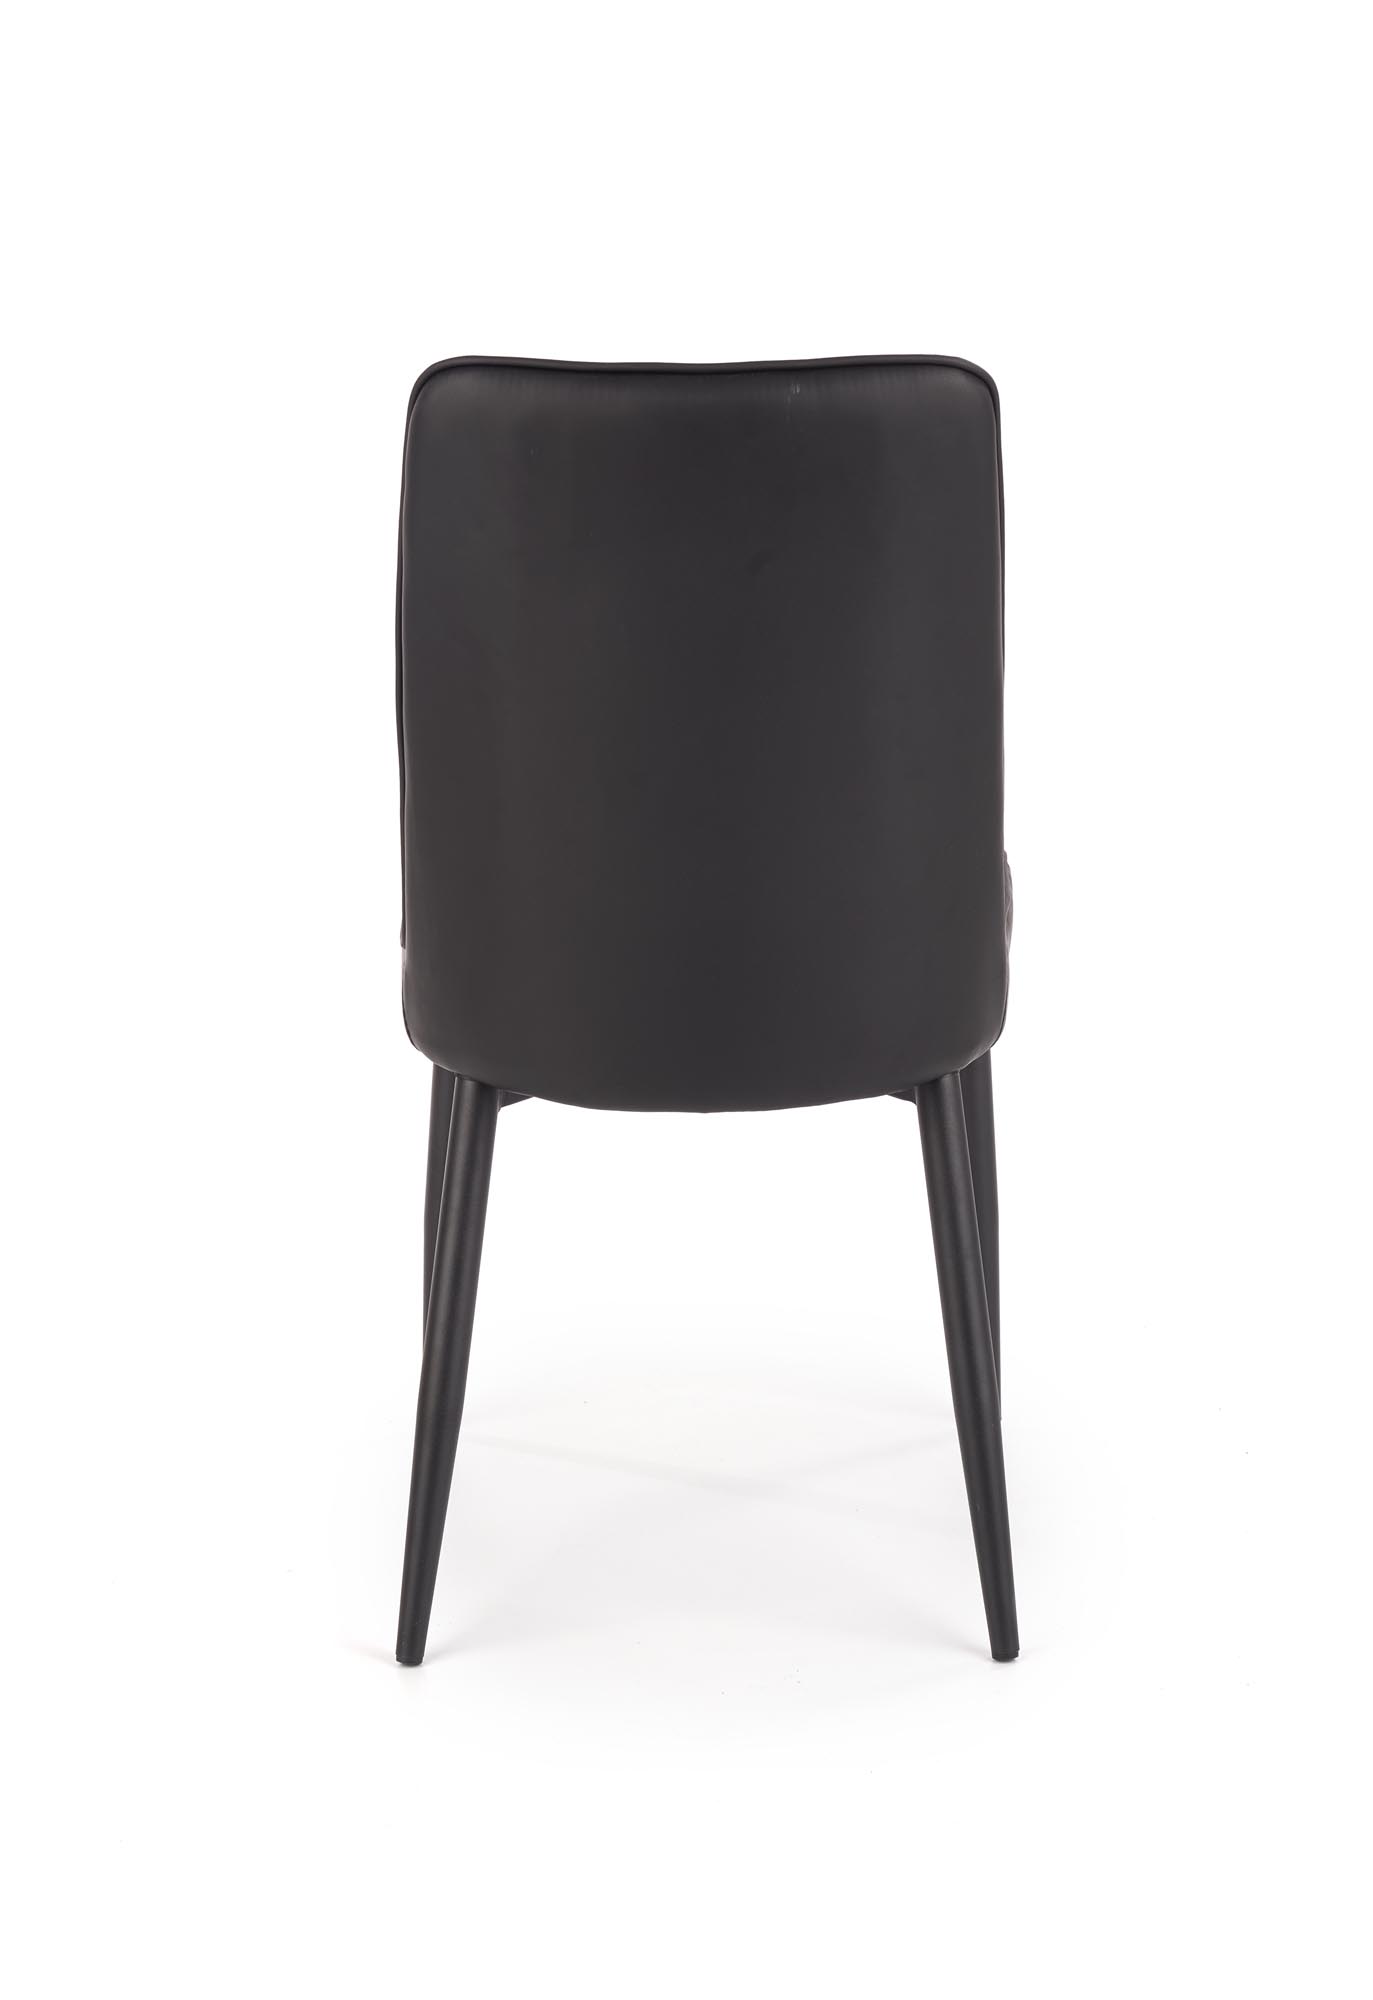 Krzesło K368 - popielaty / czarny krzesło k368 - popielaty / czarny